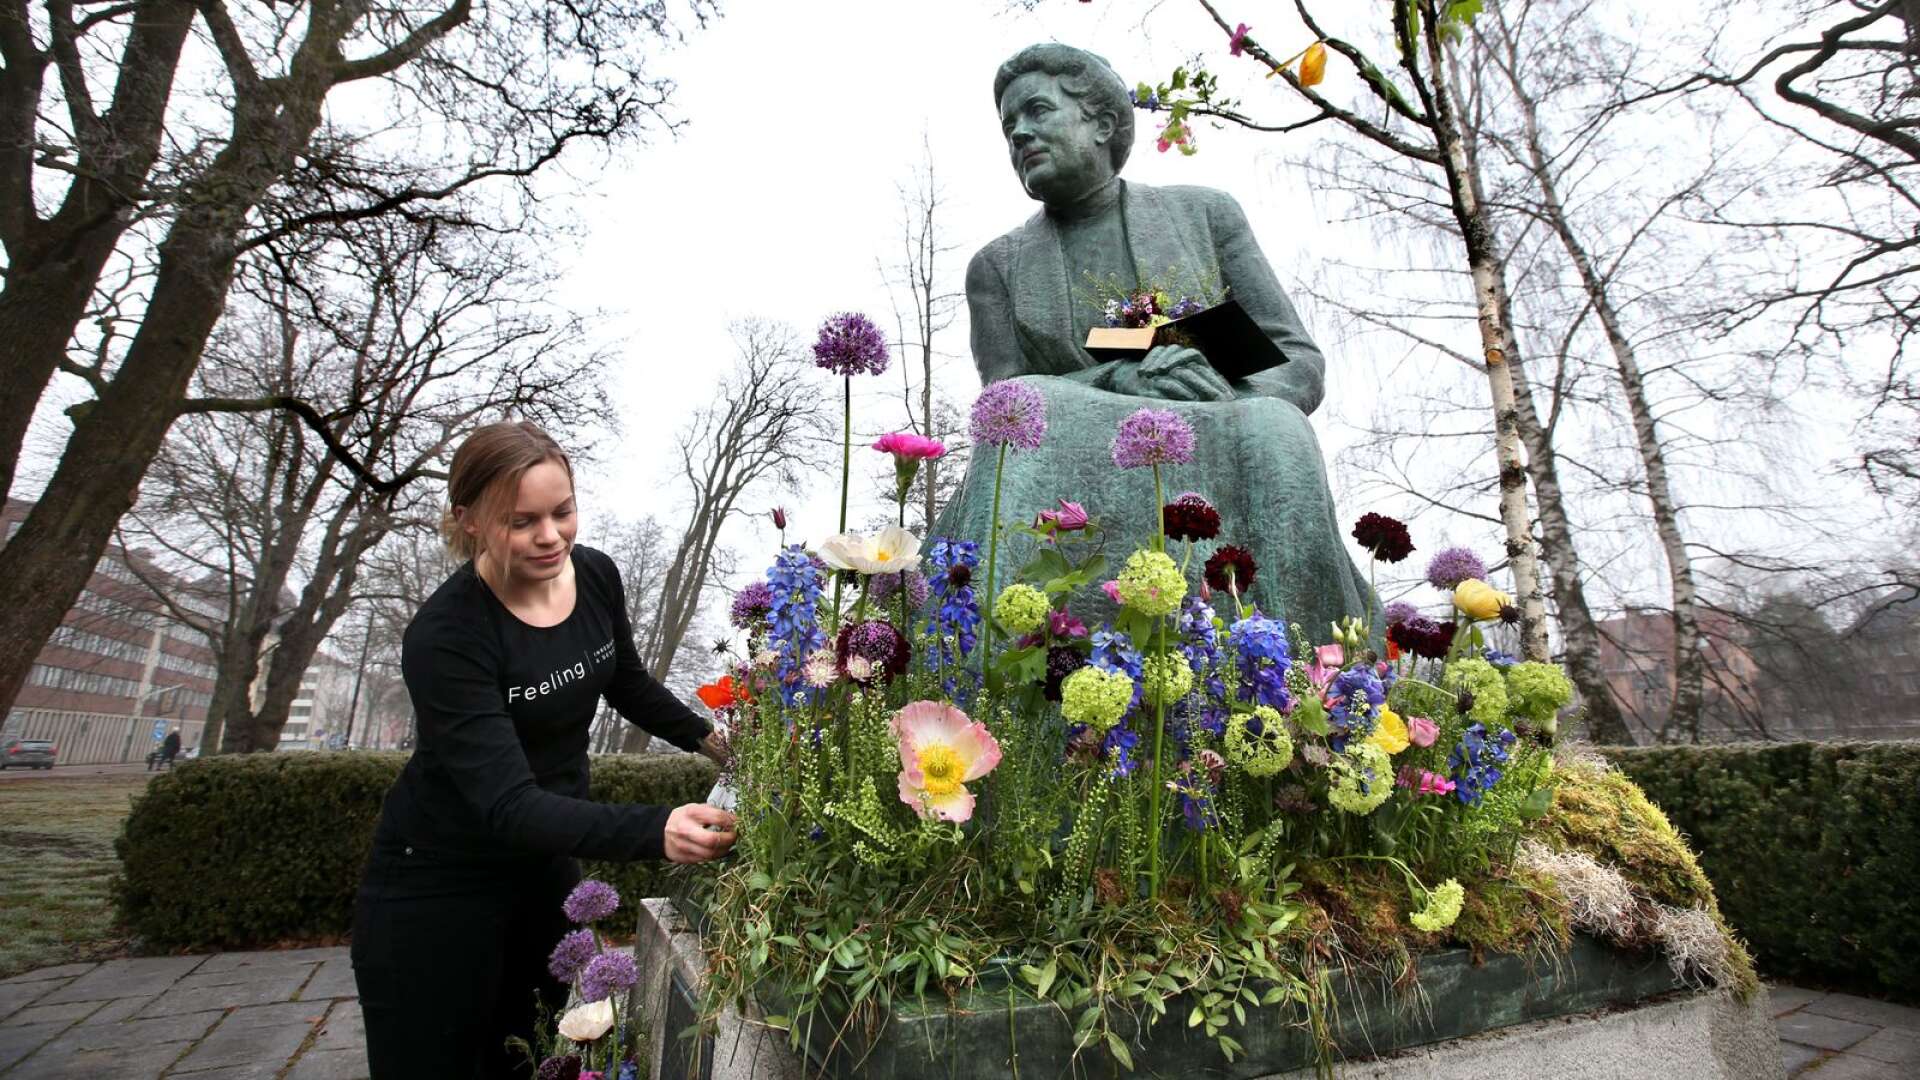 Blomsterkedjan Interflora vill uppmärksamma den 8 mars genom att smycka namngivna kvinnliga statyer. Malin Alterblad, florist på butiken Feeling, har fått i uppdrag att dekorera Selma. 